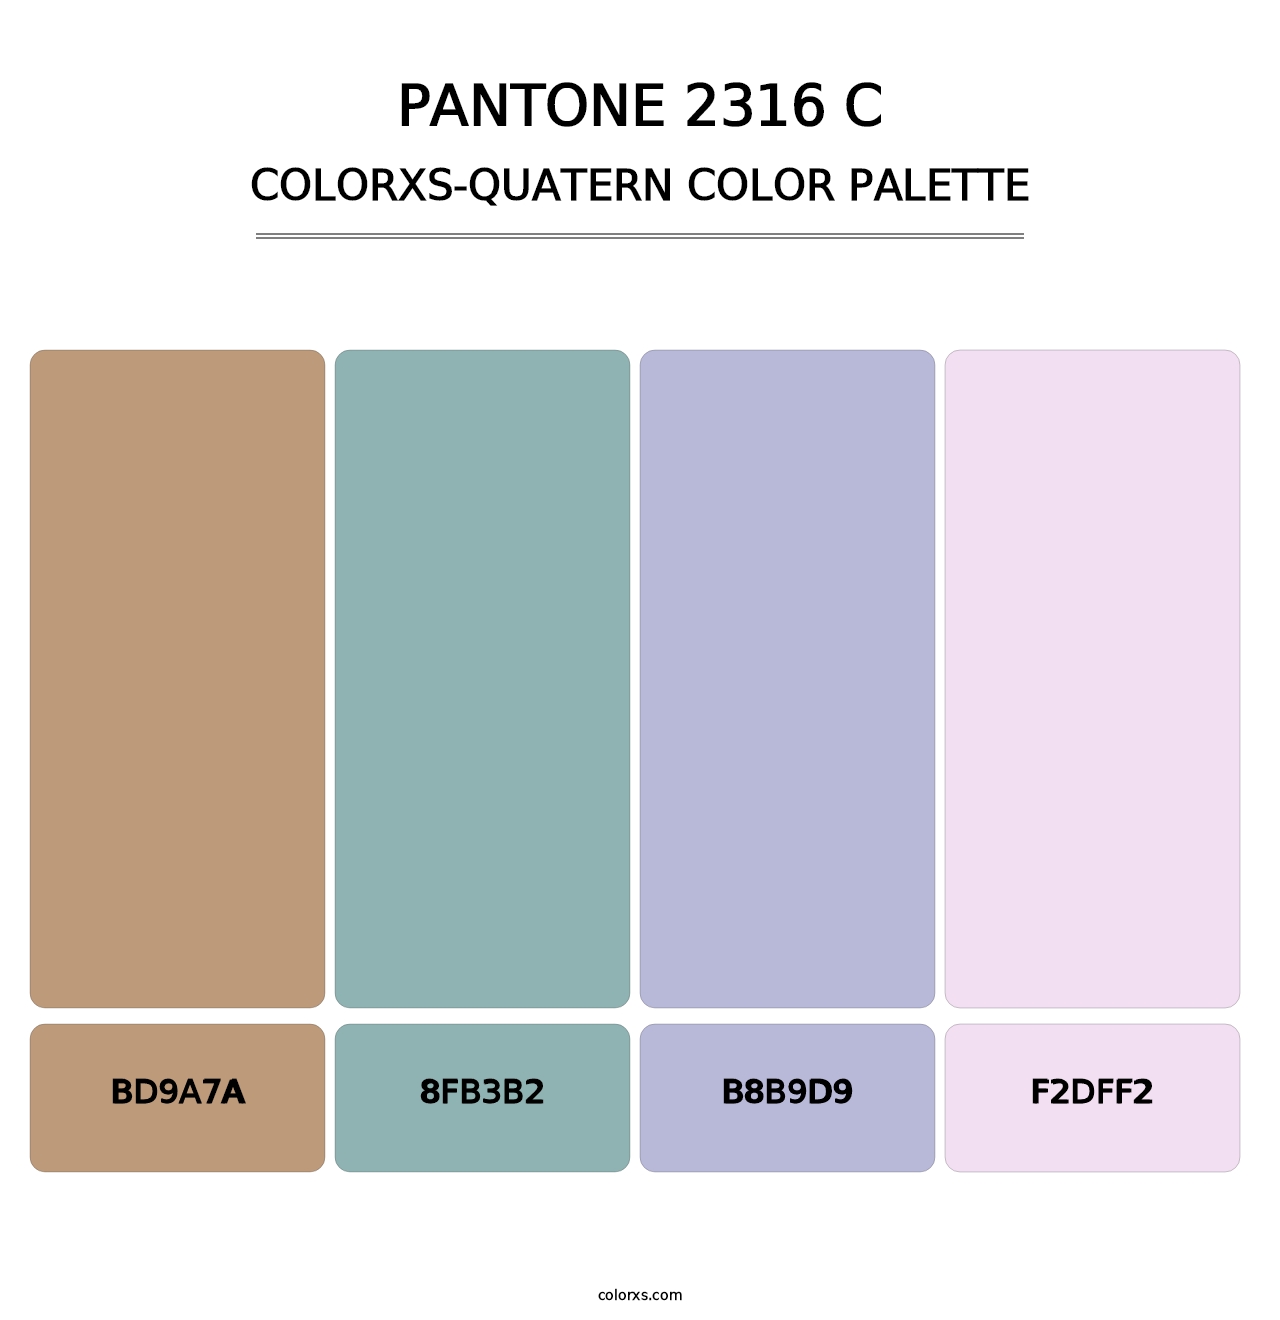 PANTONE 2316 C - Colorxs Quatern Palette